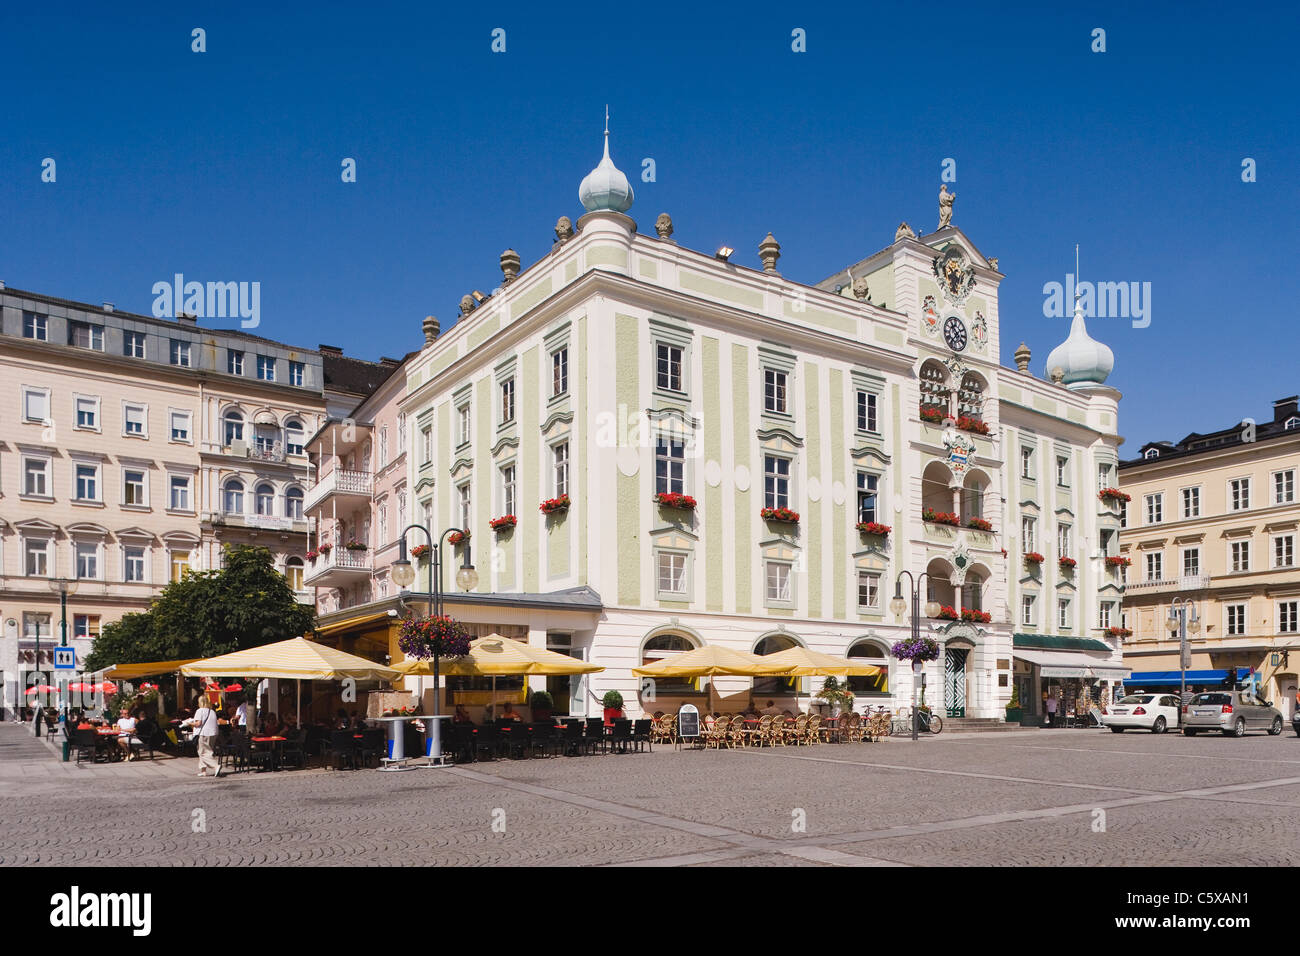 Austria, Gmunden, Ayuntamiento con el tradicional glockenspiel Foto de stock